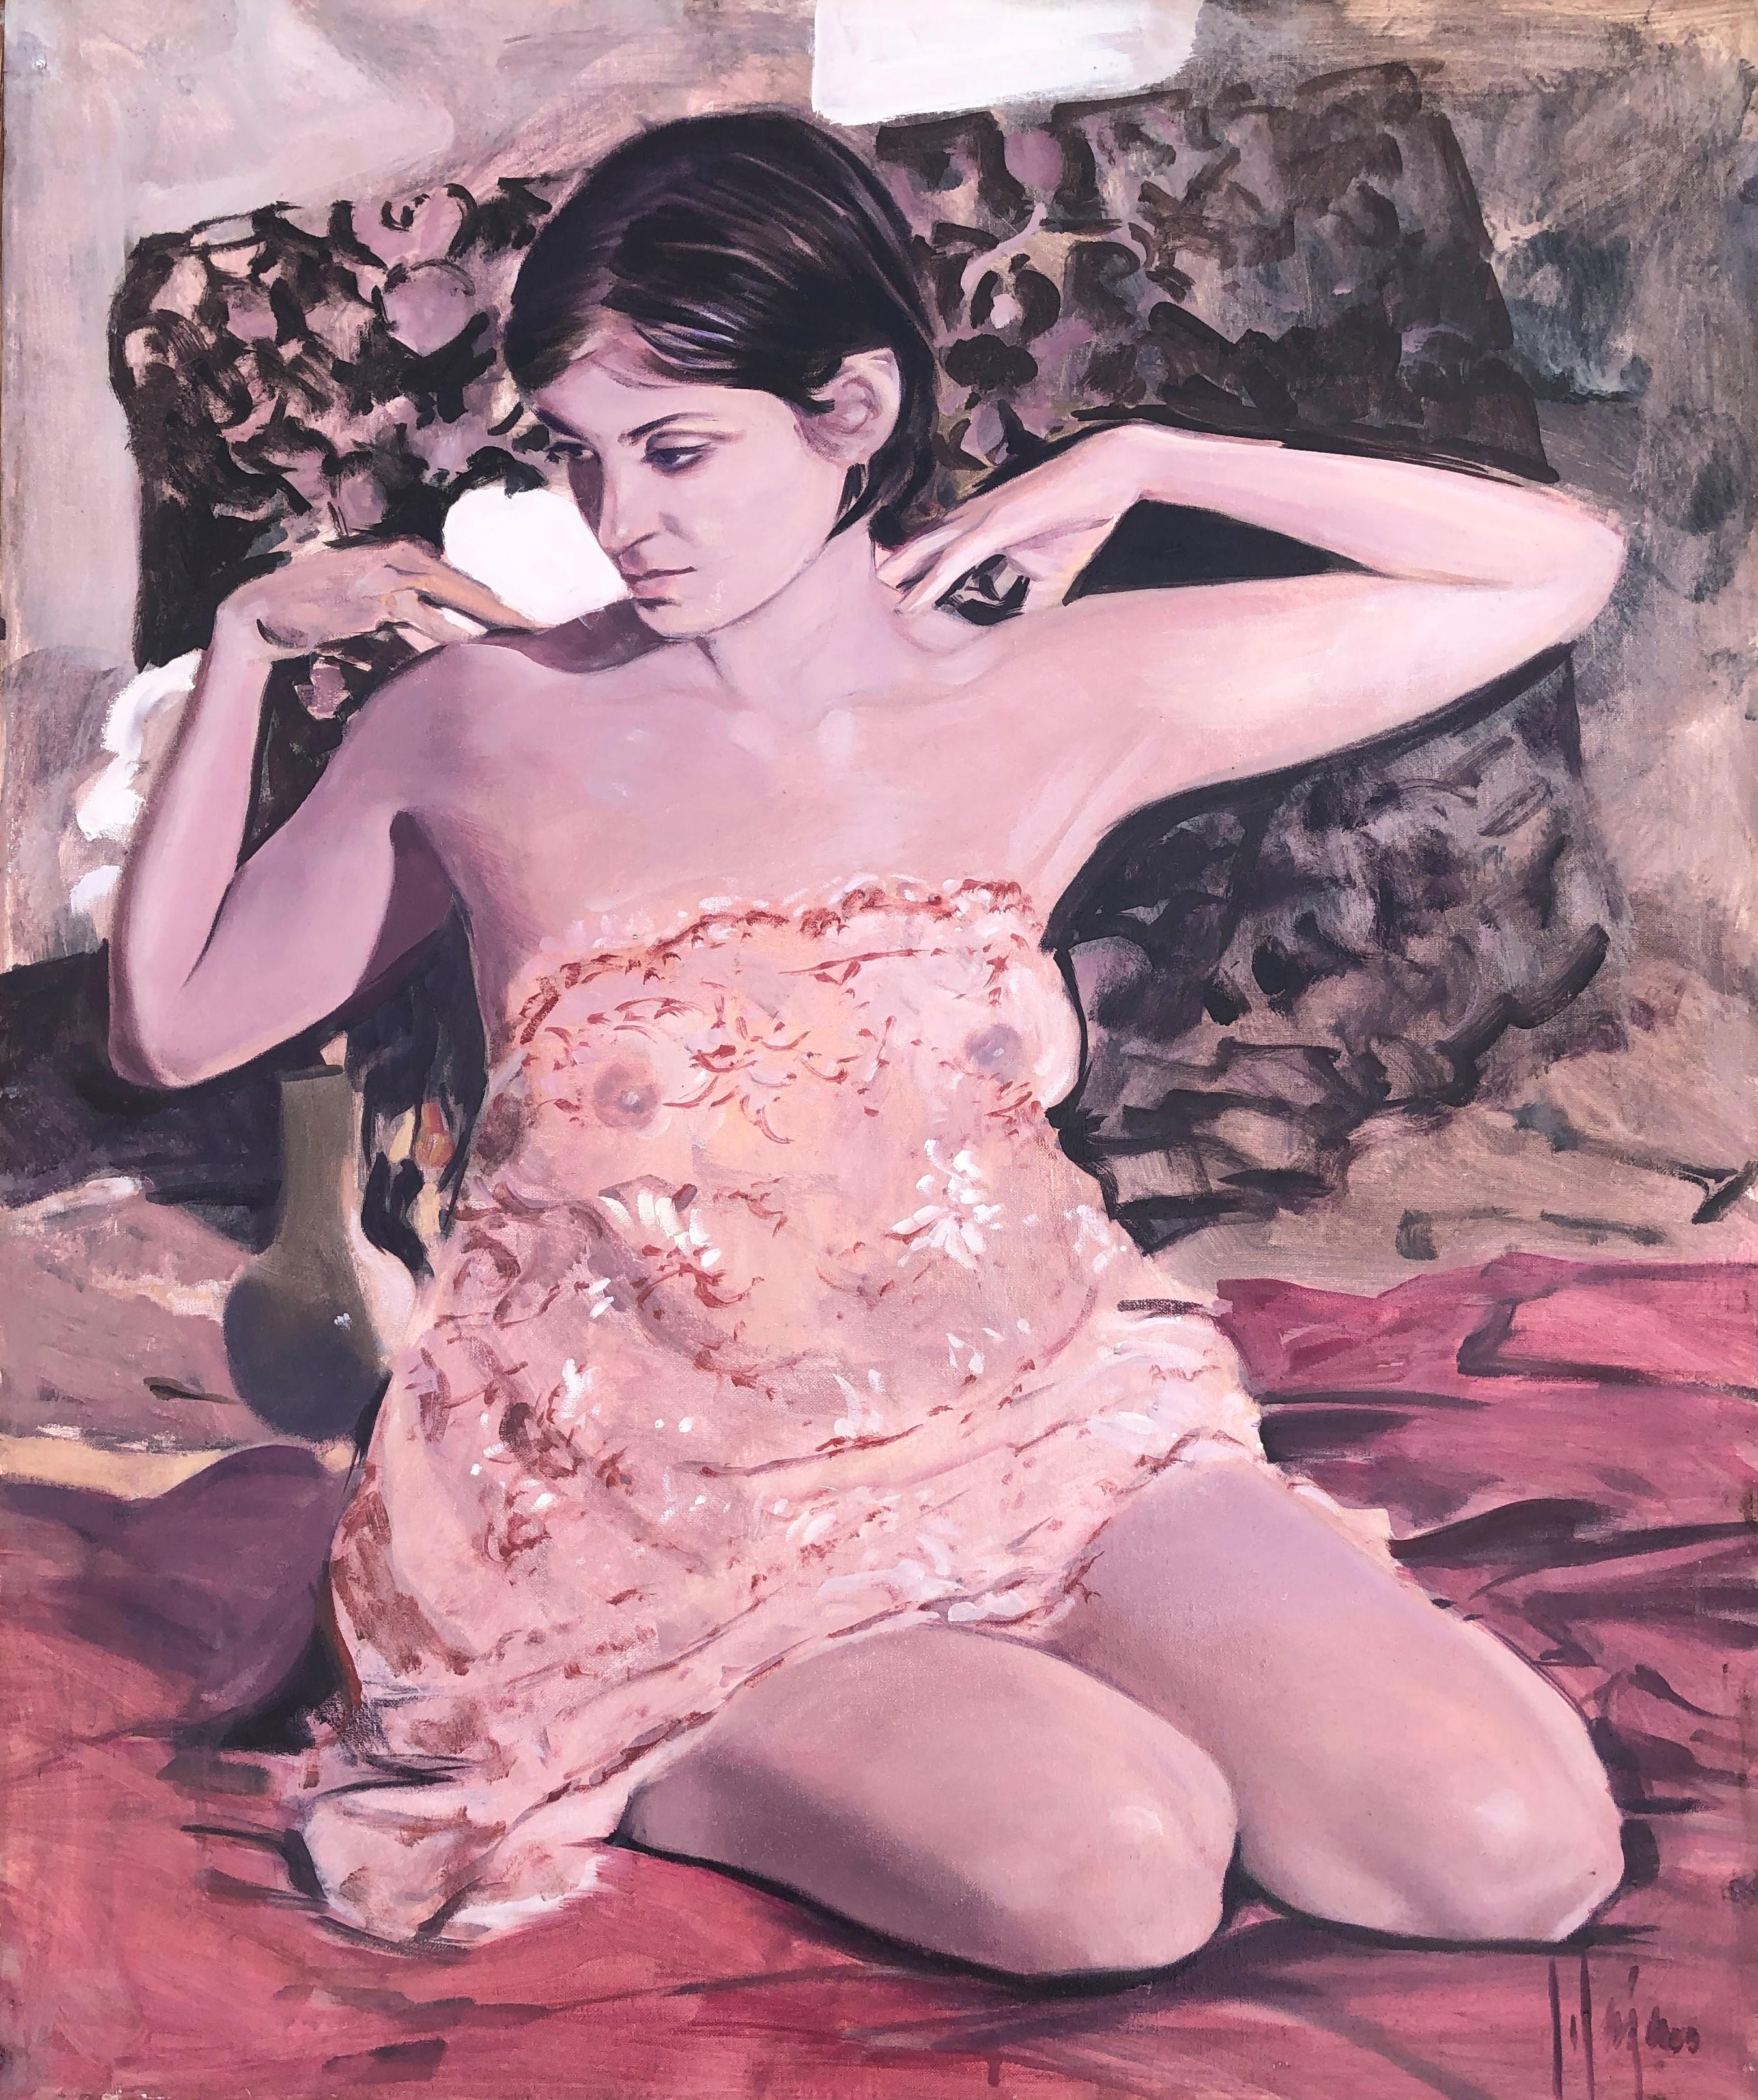 Isidoro Lazaro Nude Painting - Female figure original oil on canvas nude painting